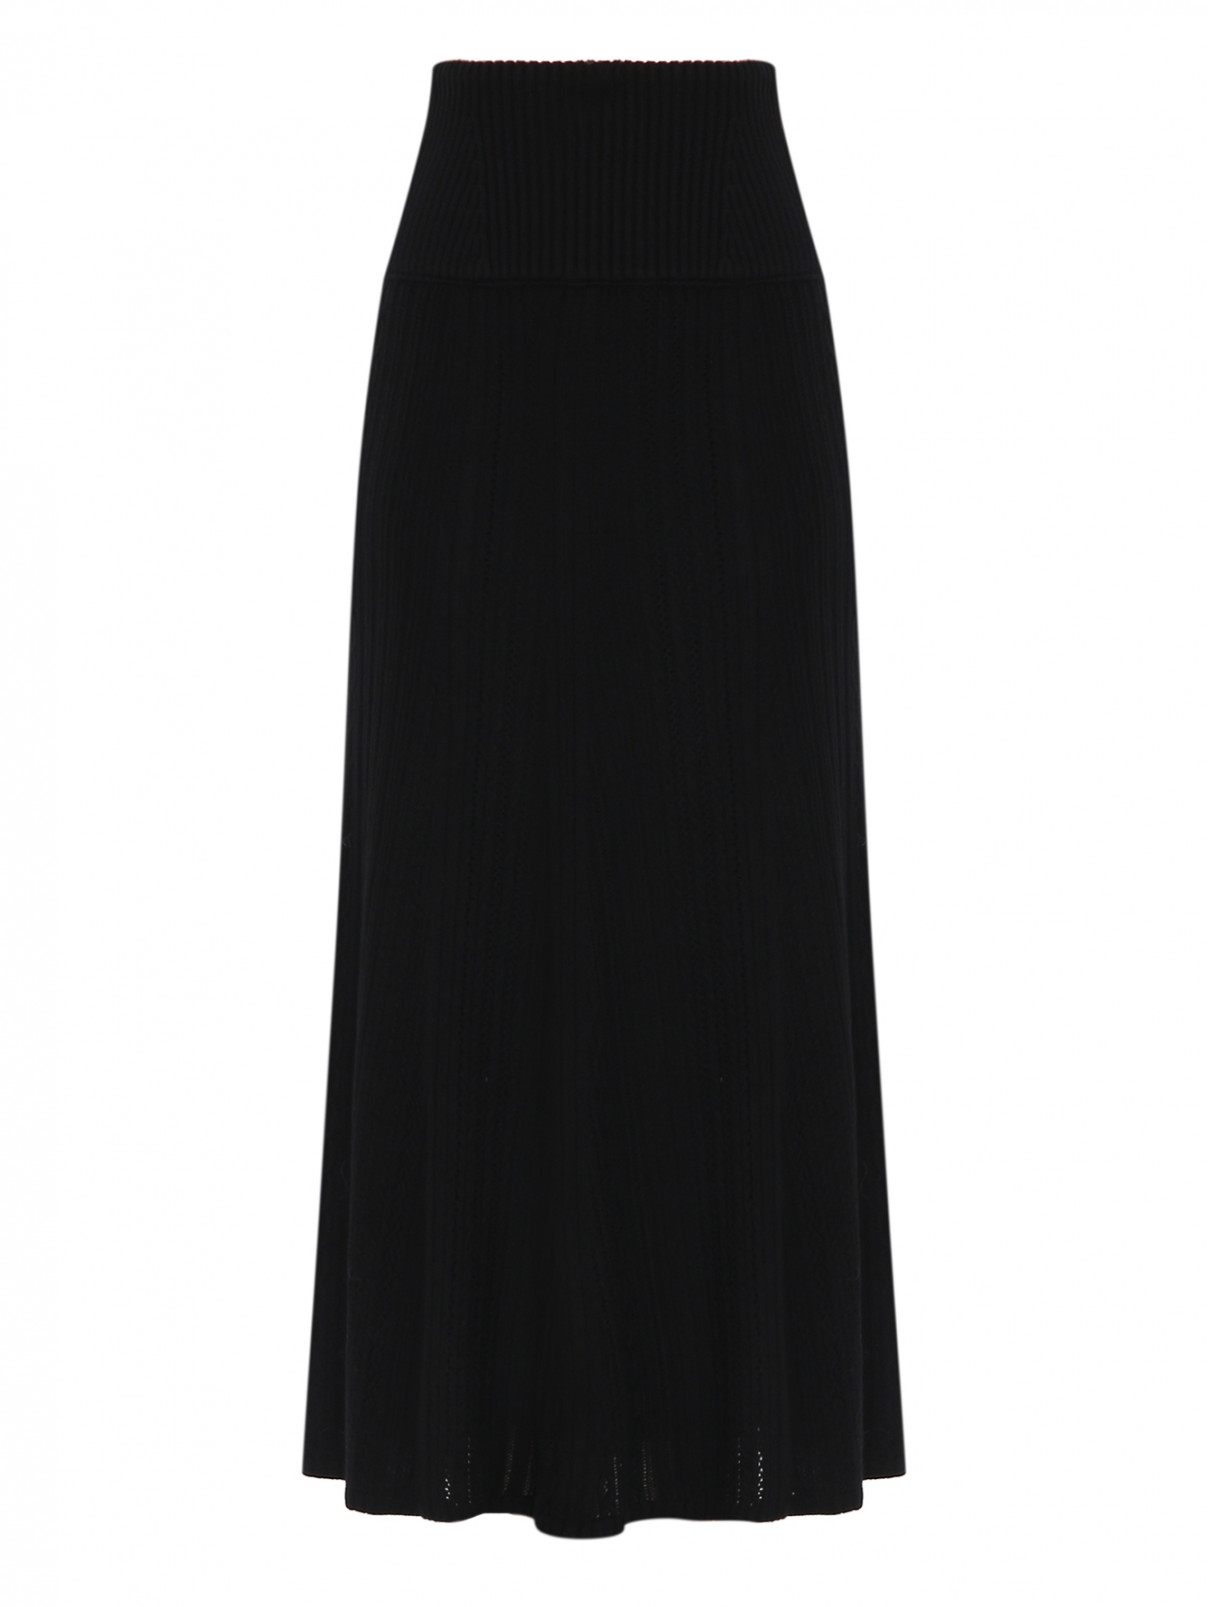 Однотонная юбка-миди из шерсти Dorothee Schumacher  –  Общий вид  – Цвет:  Черный